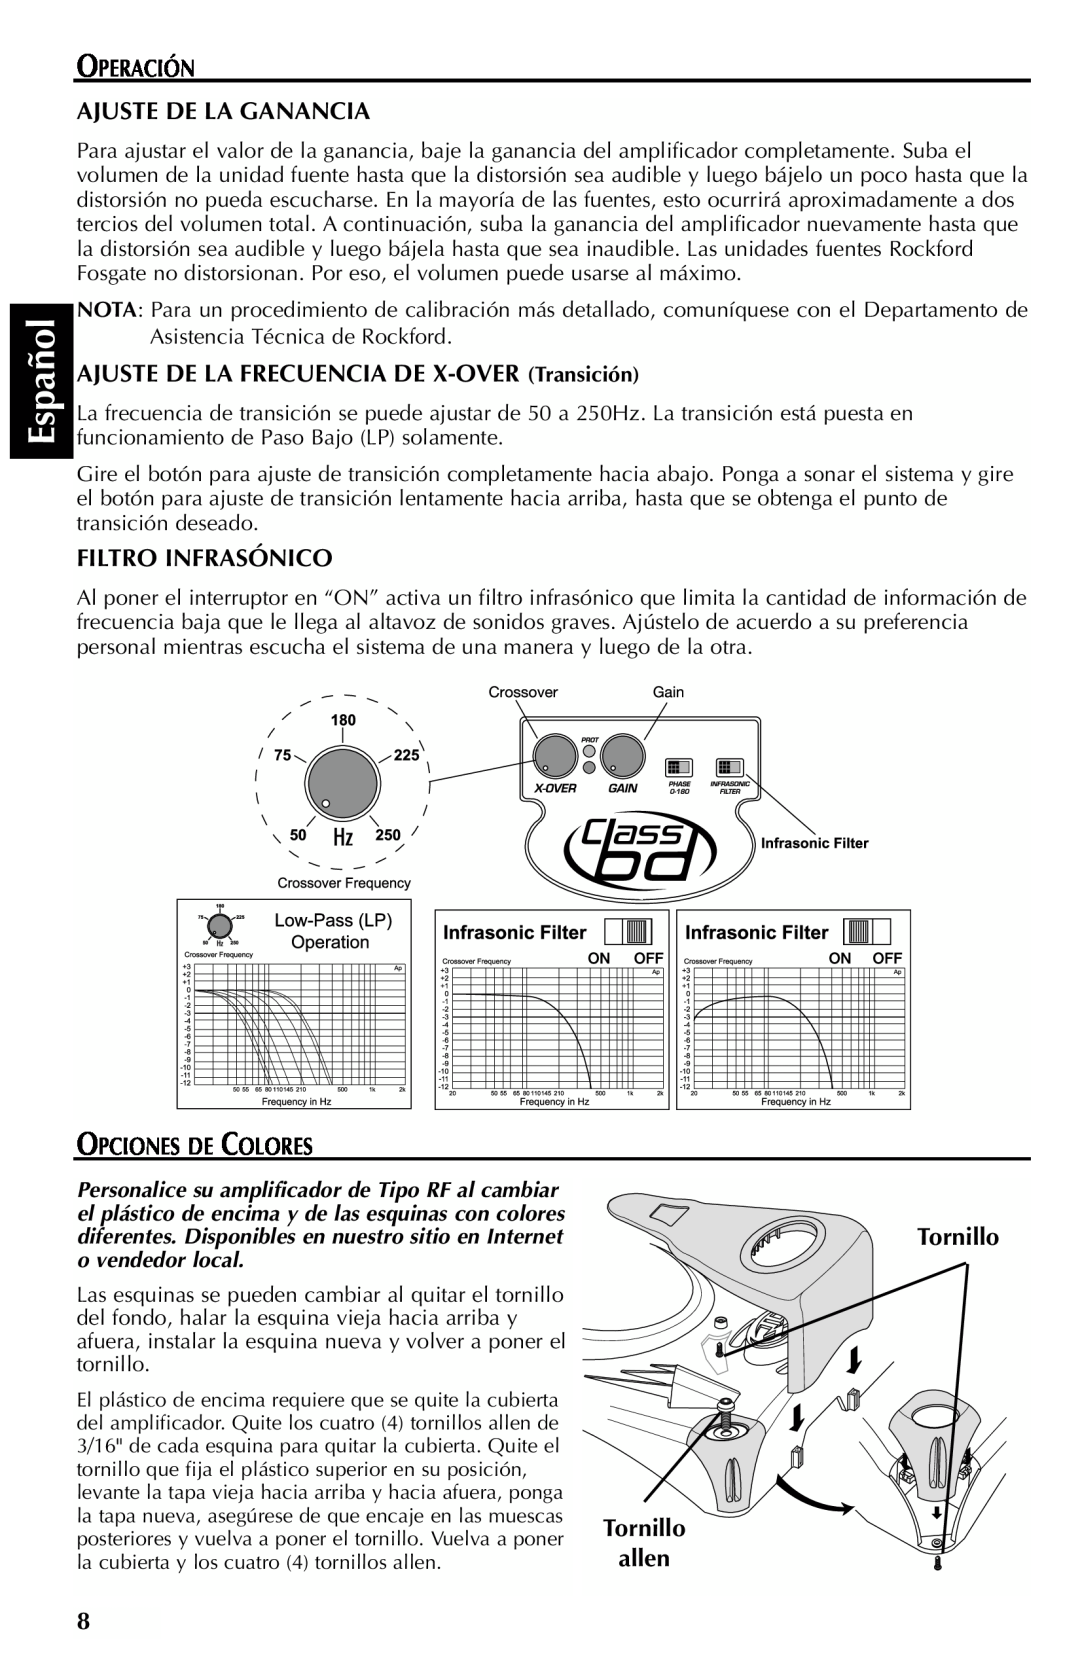 Rockford Fosgate FFX6 manual Español, Operación Ajuste De La Ganancia, AJUSTE DE LA FRECUENCIA DE X-OVER Transición 